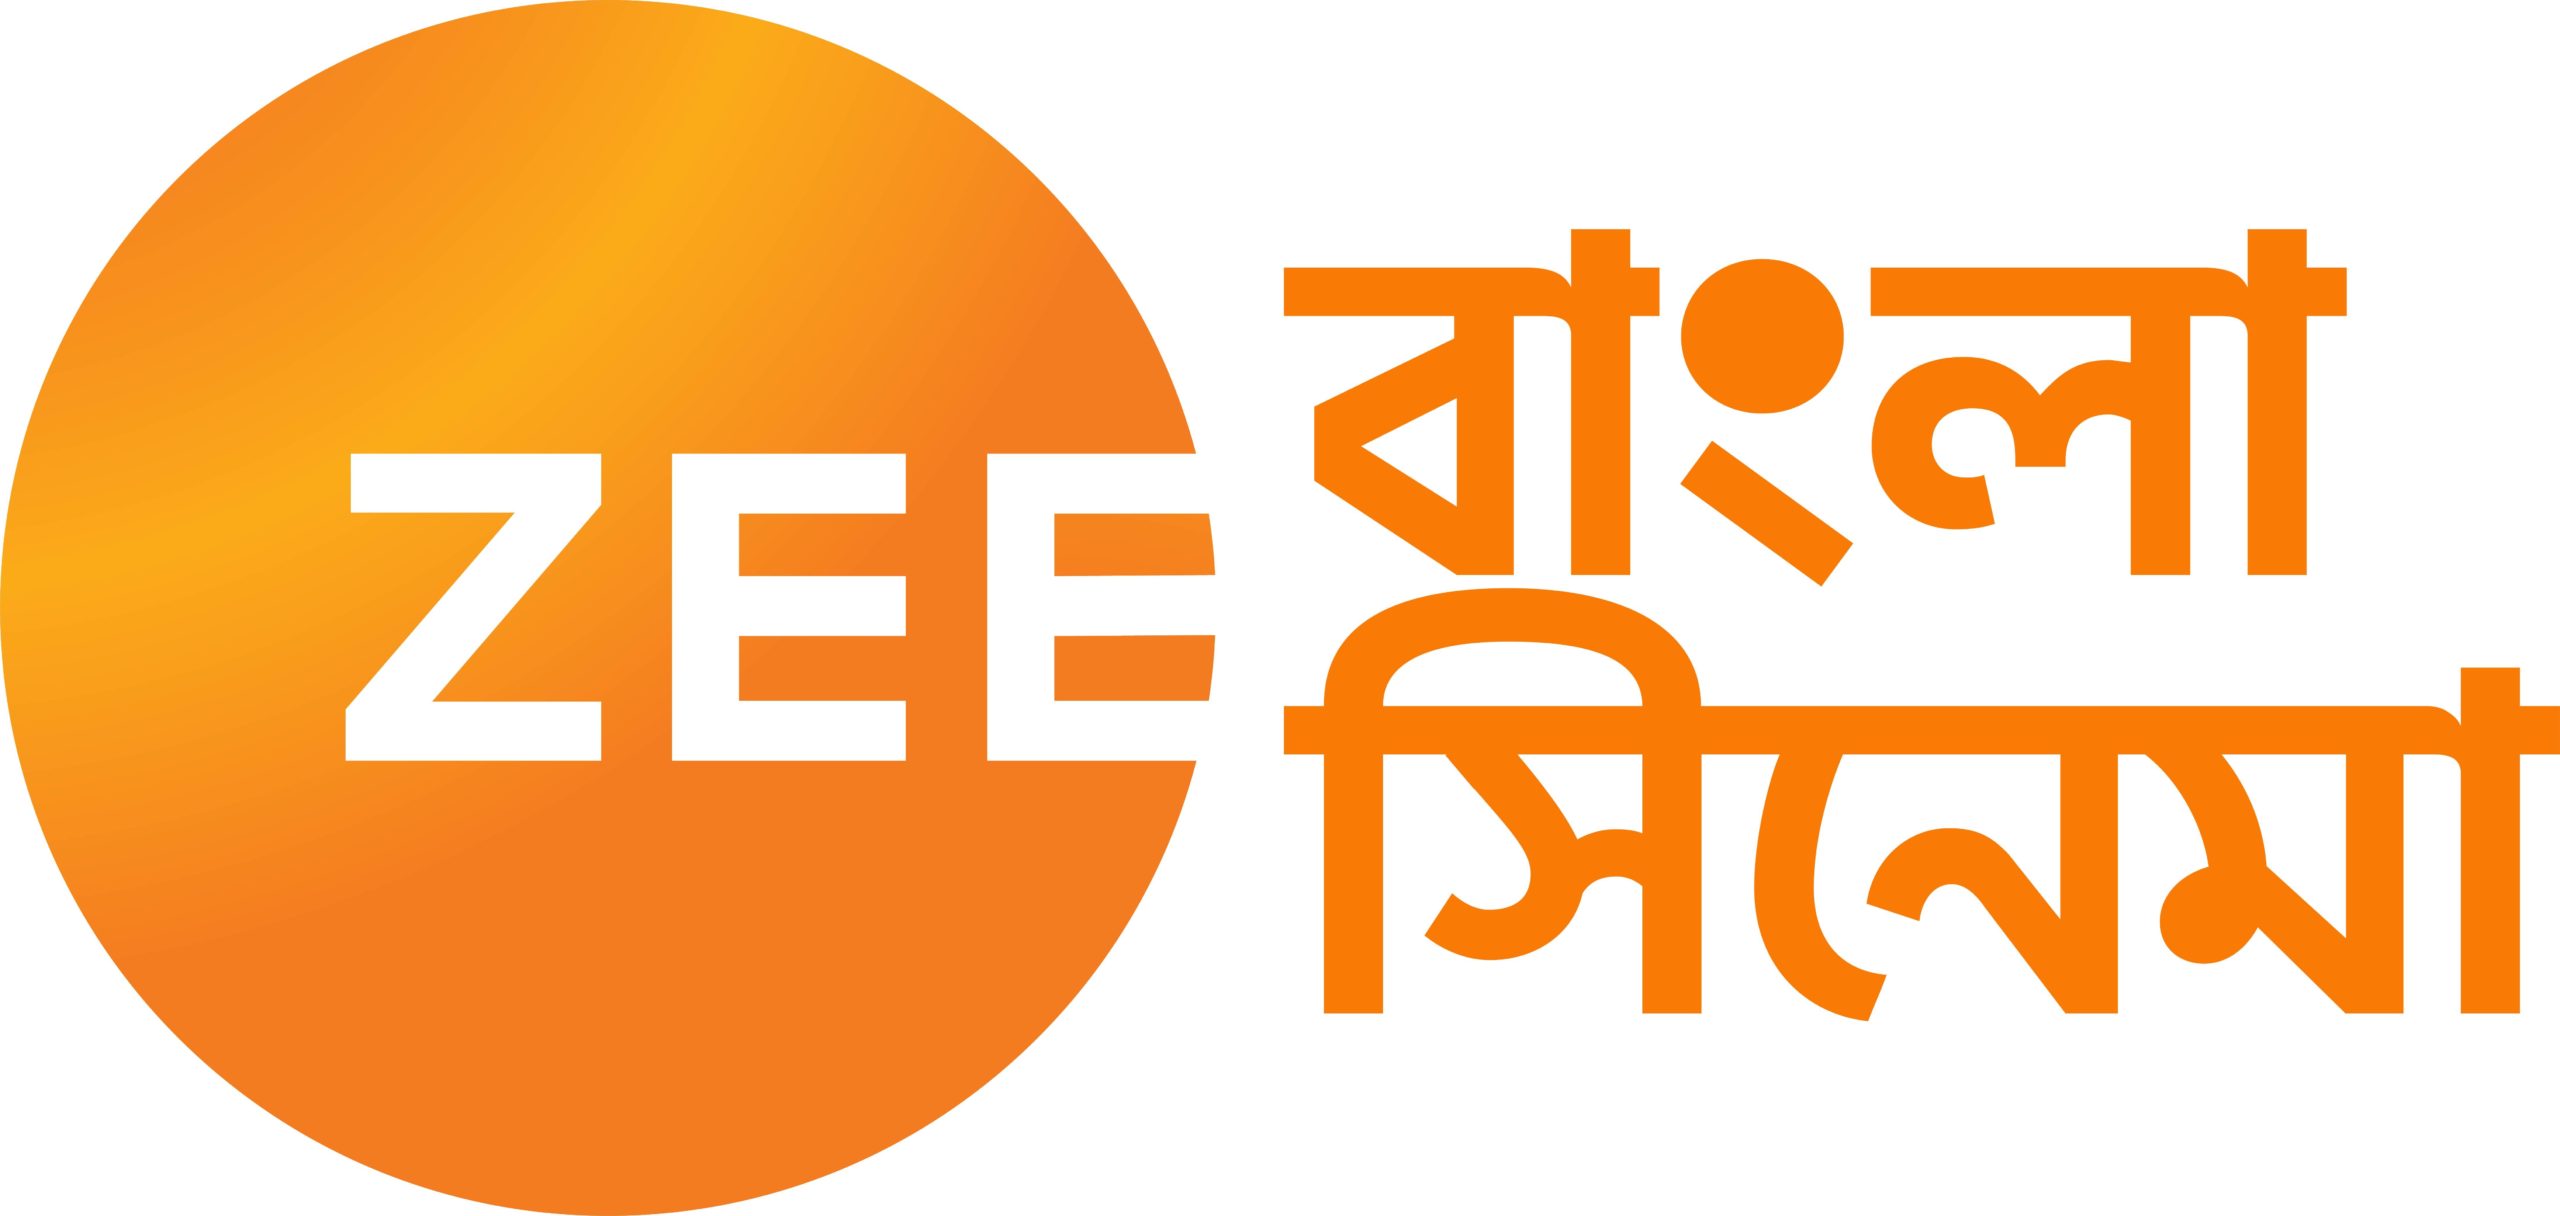 live tv zee bangla